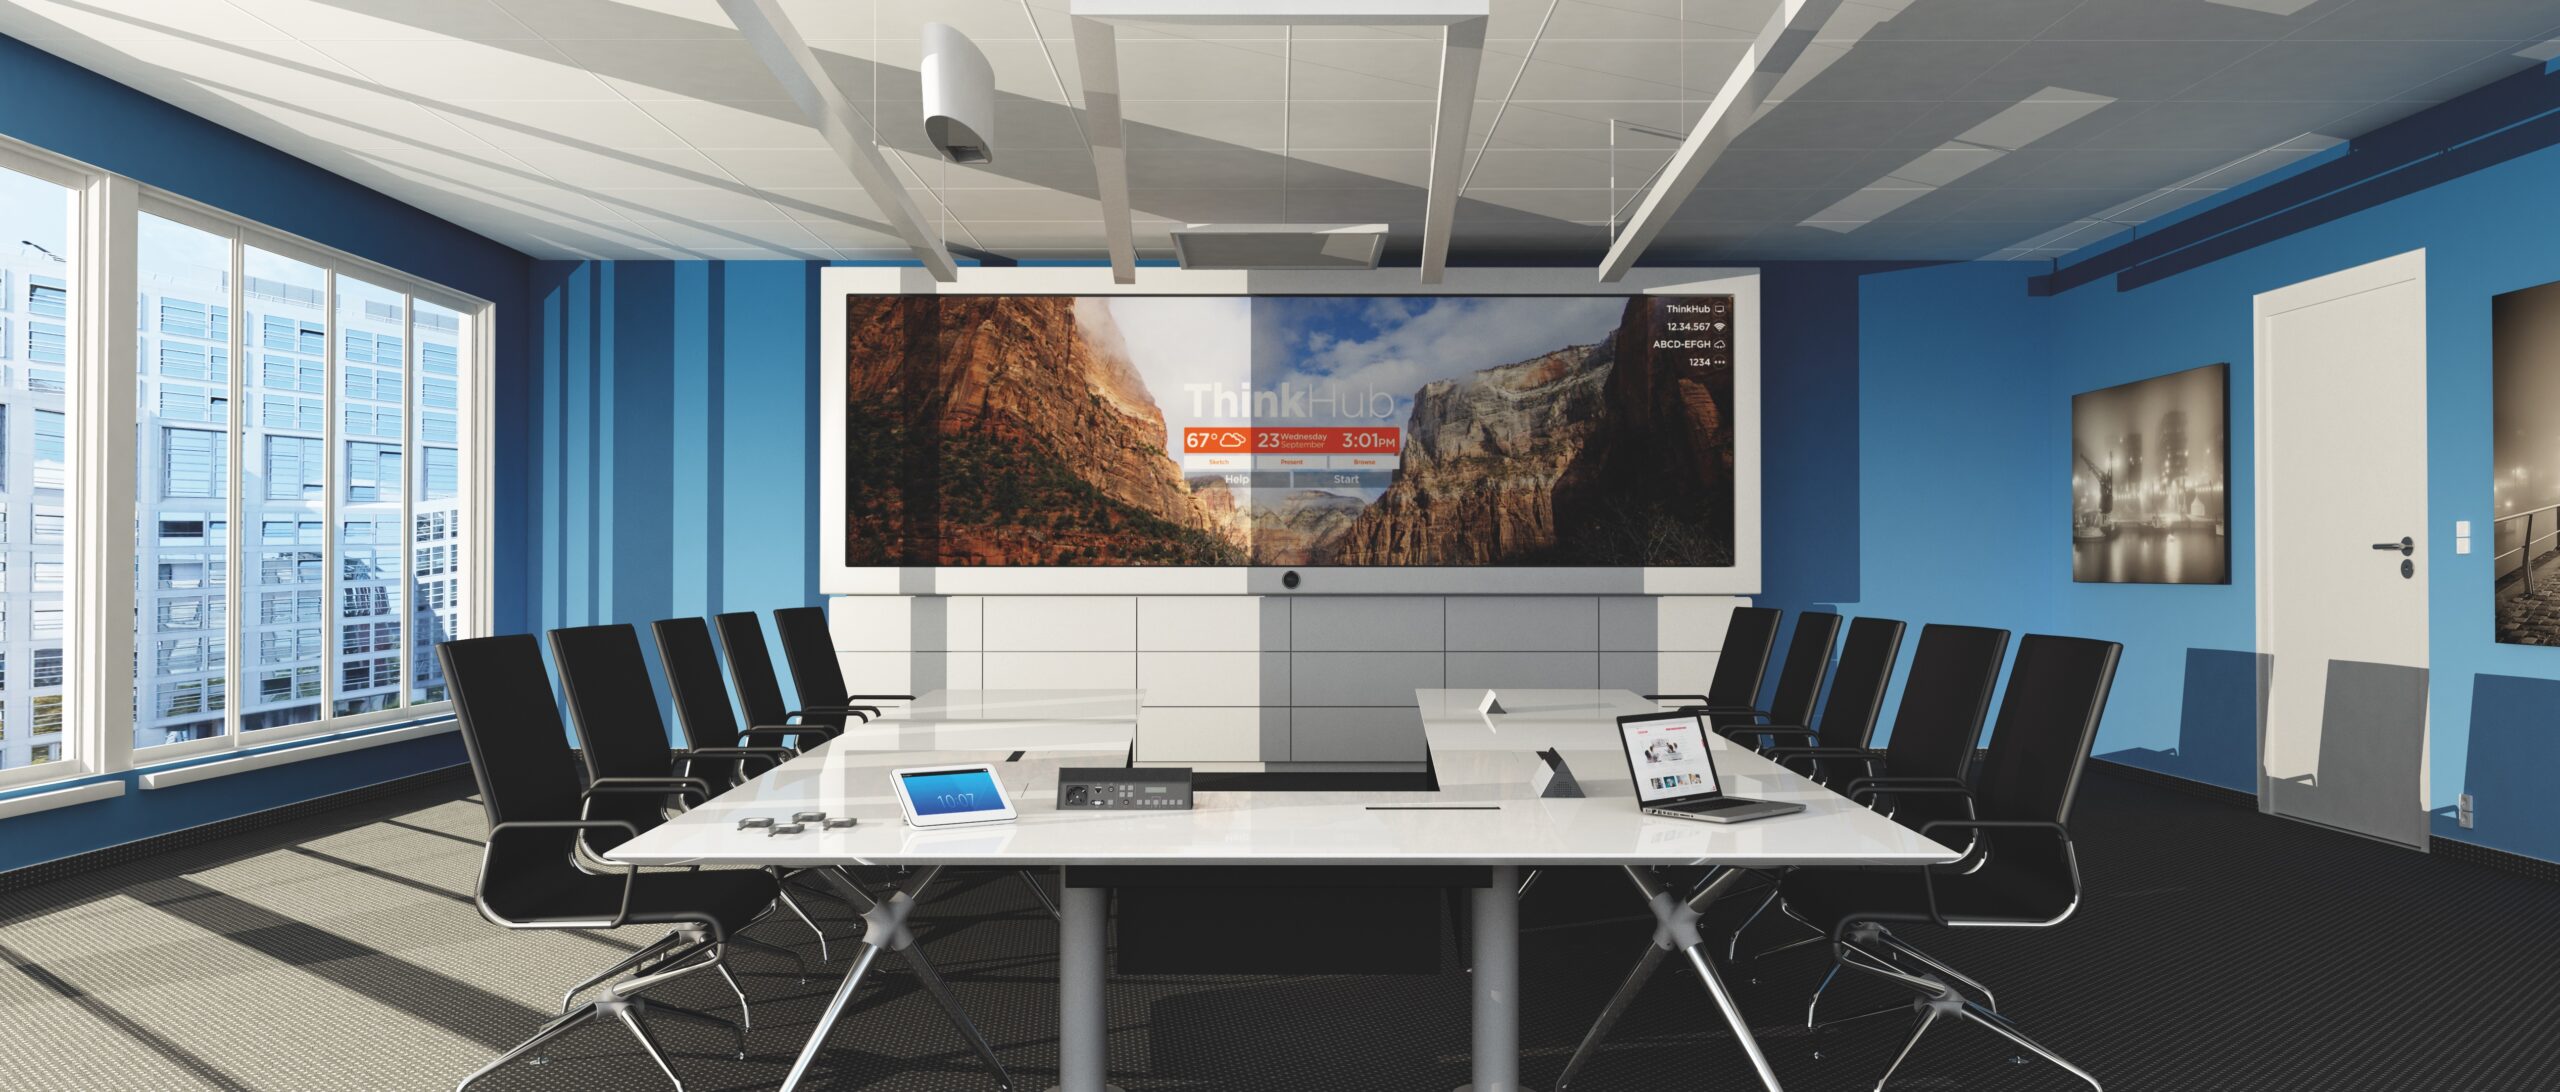 Board Room Comfort mit kompletter Medientechnik wie LED-Wand, Mediensteuerung, Deckenmikrofone, Kamera und Touch-Controller sowie Ausstattung mit Medienmöbeln